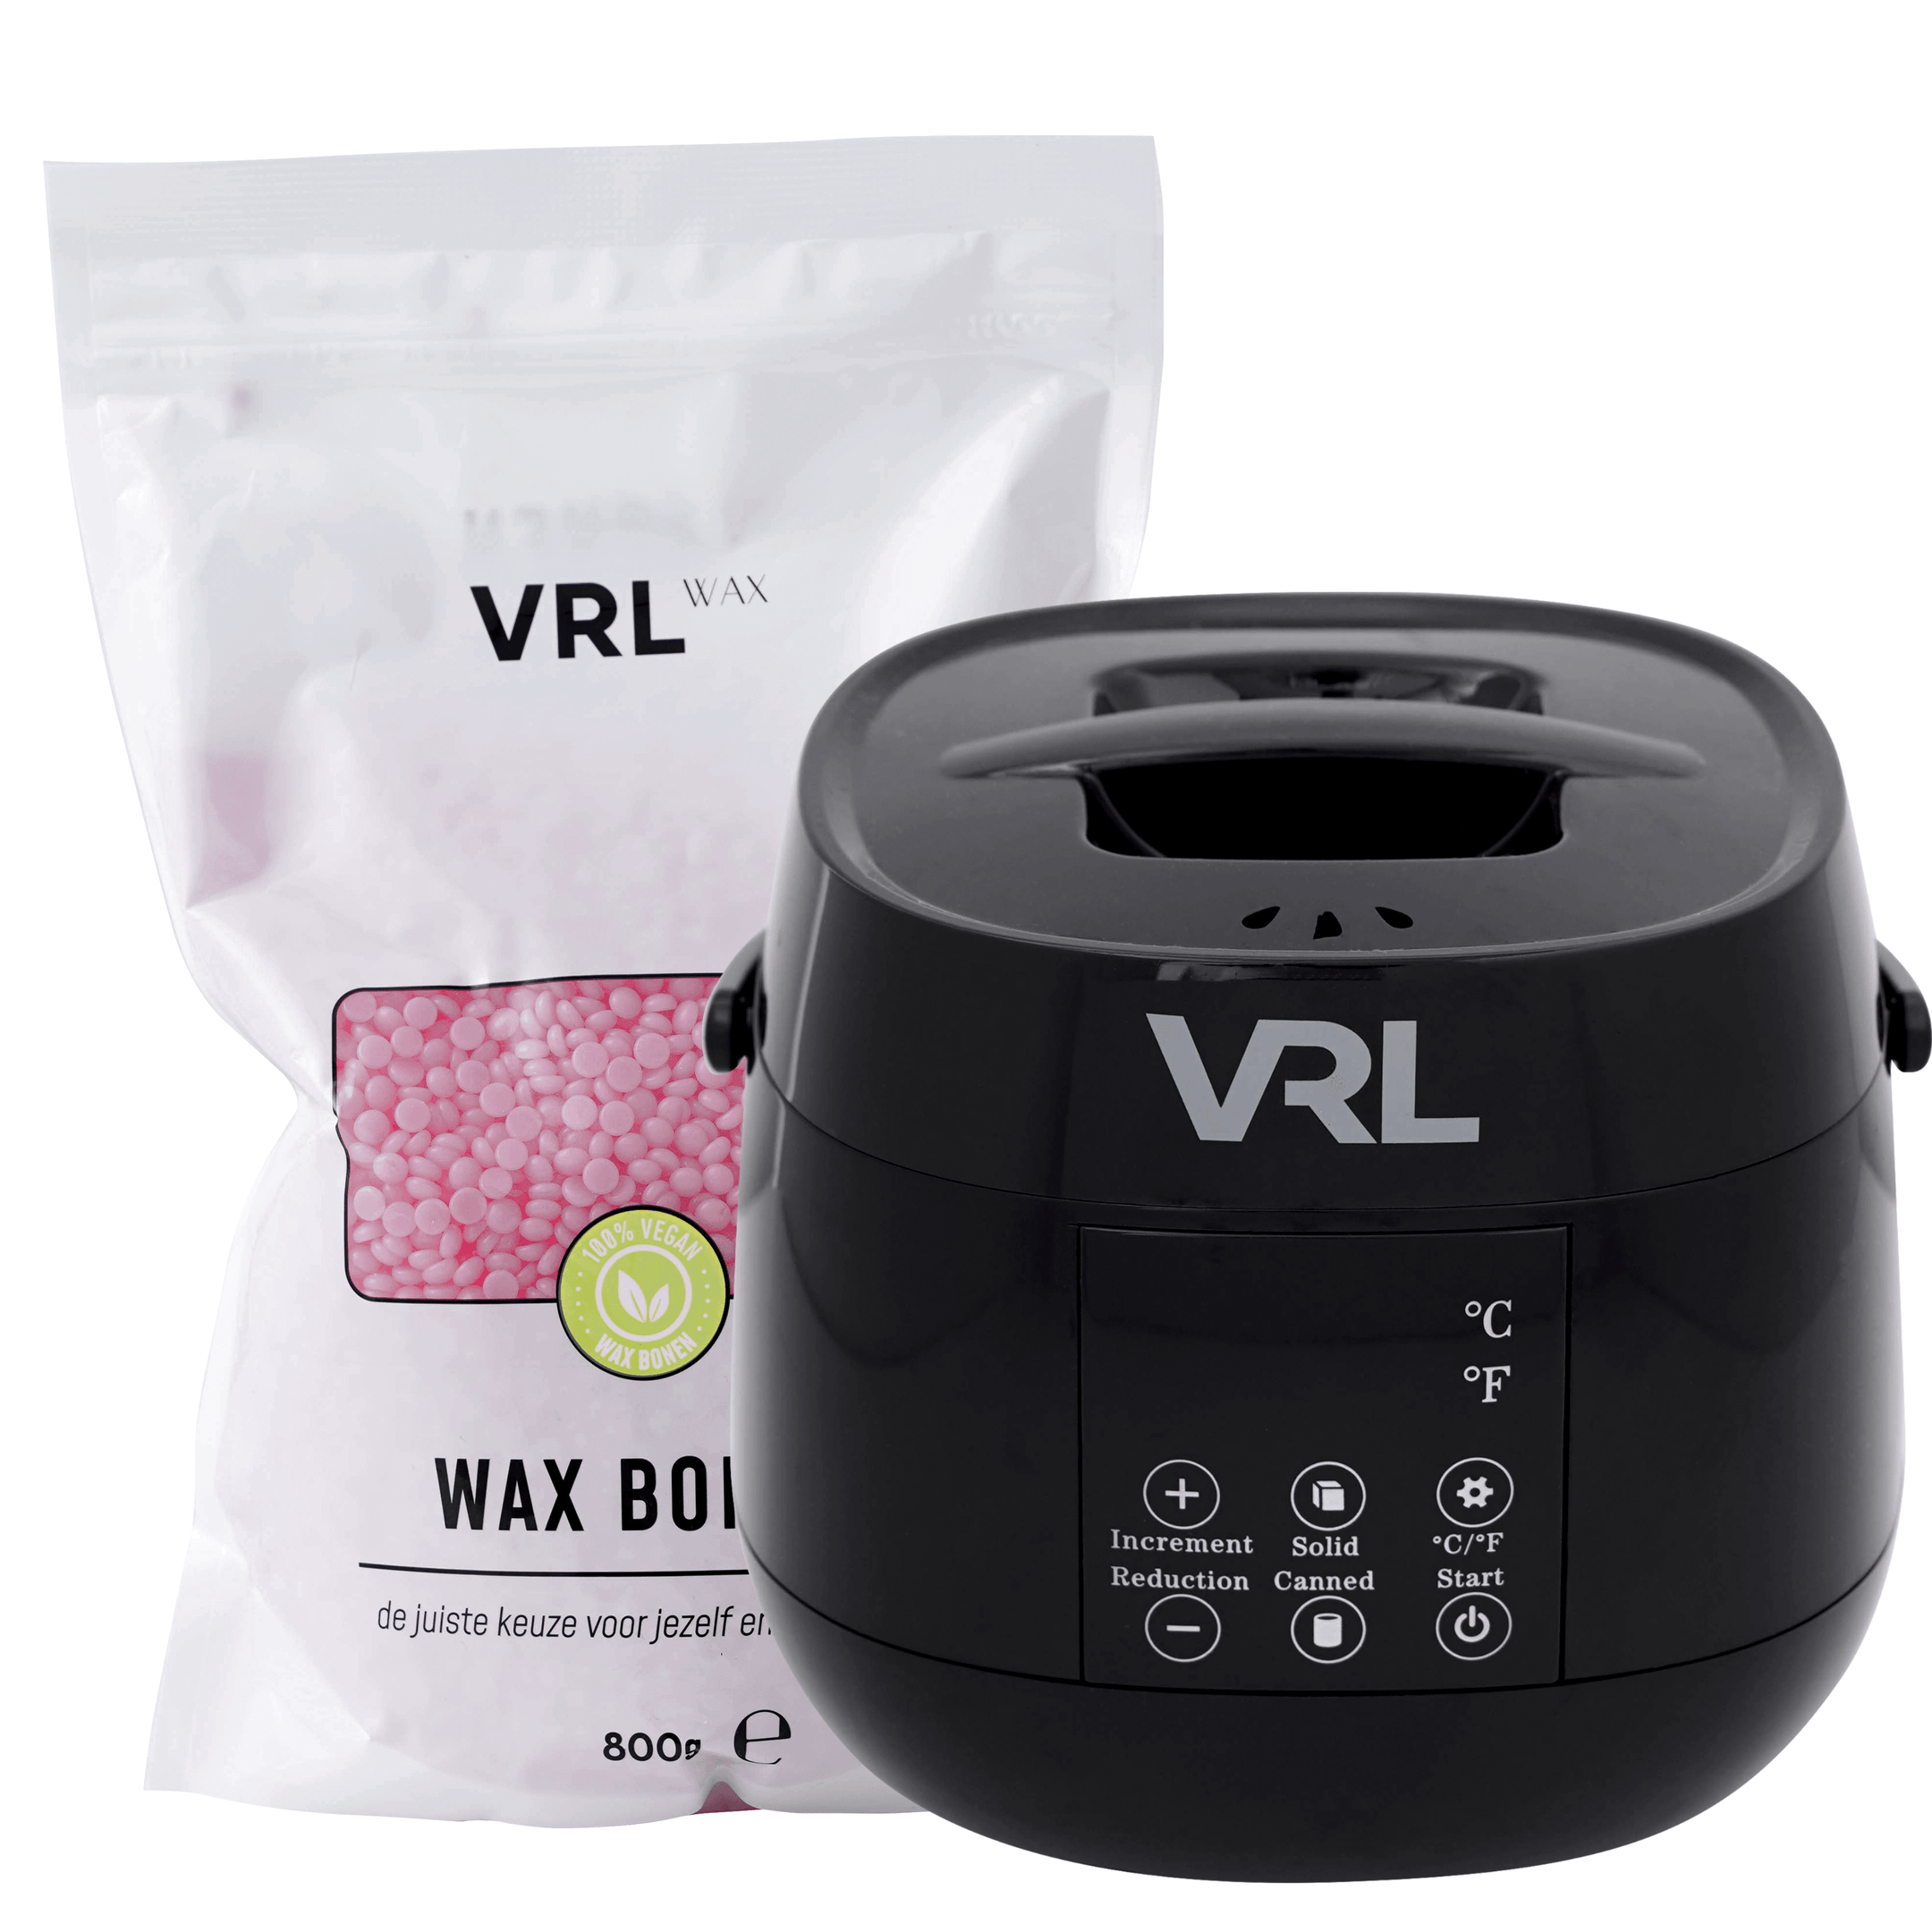 VRL Smart Wax Apparaat - Compleet met Orange Wax Bonen